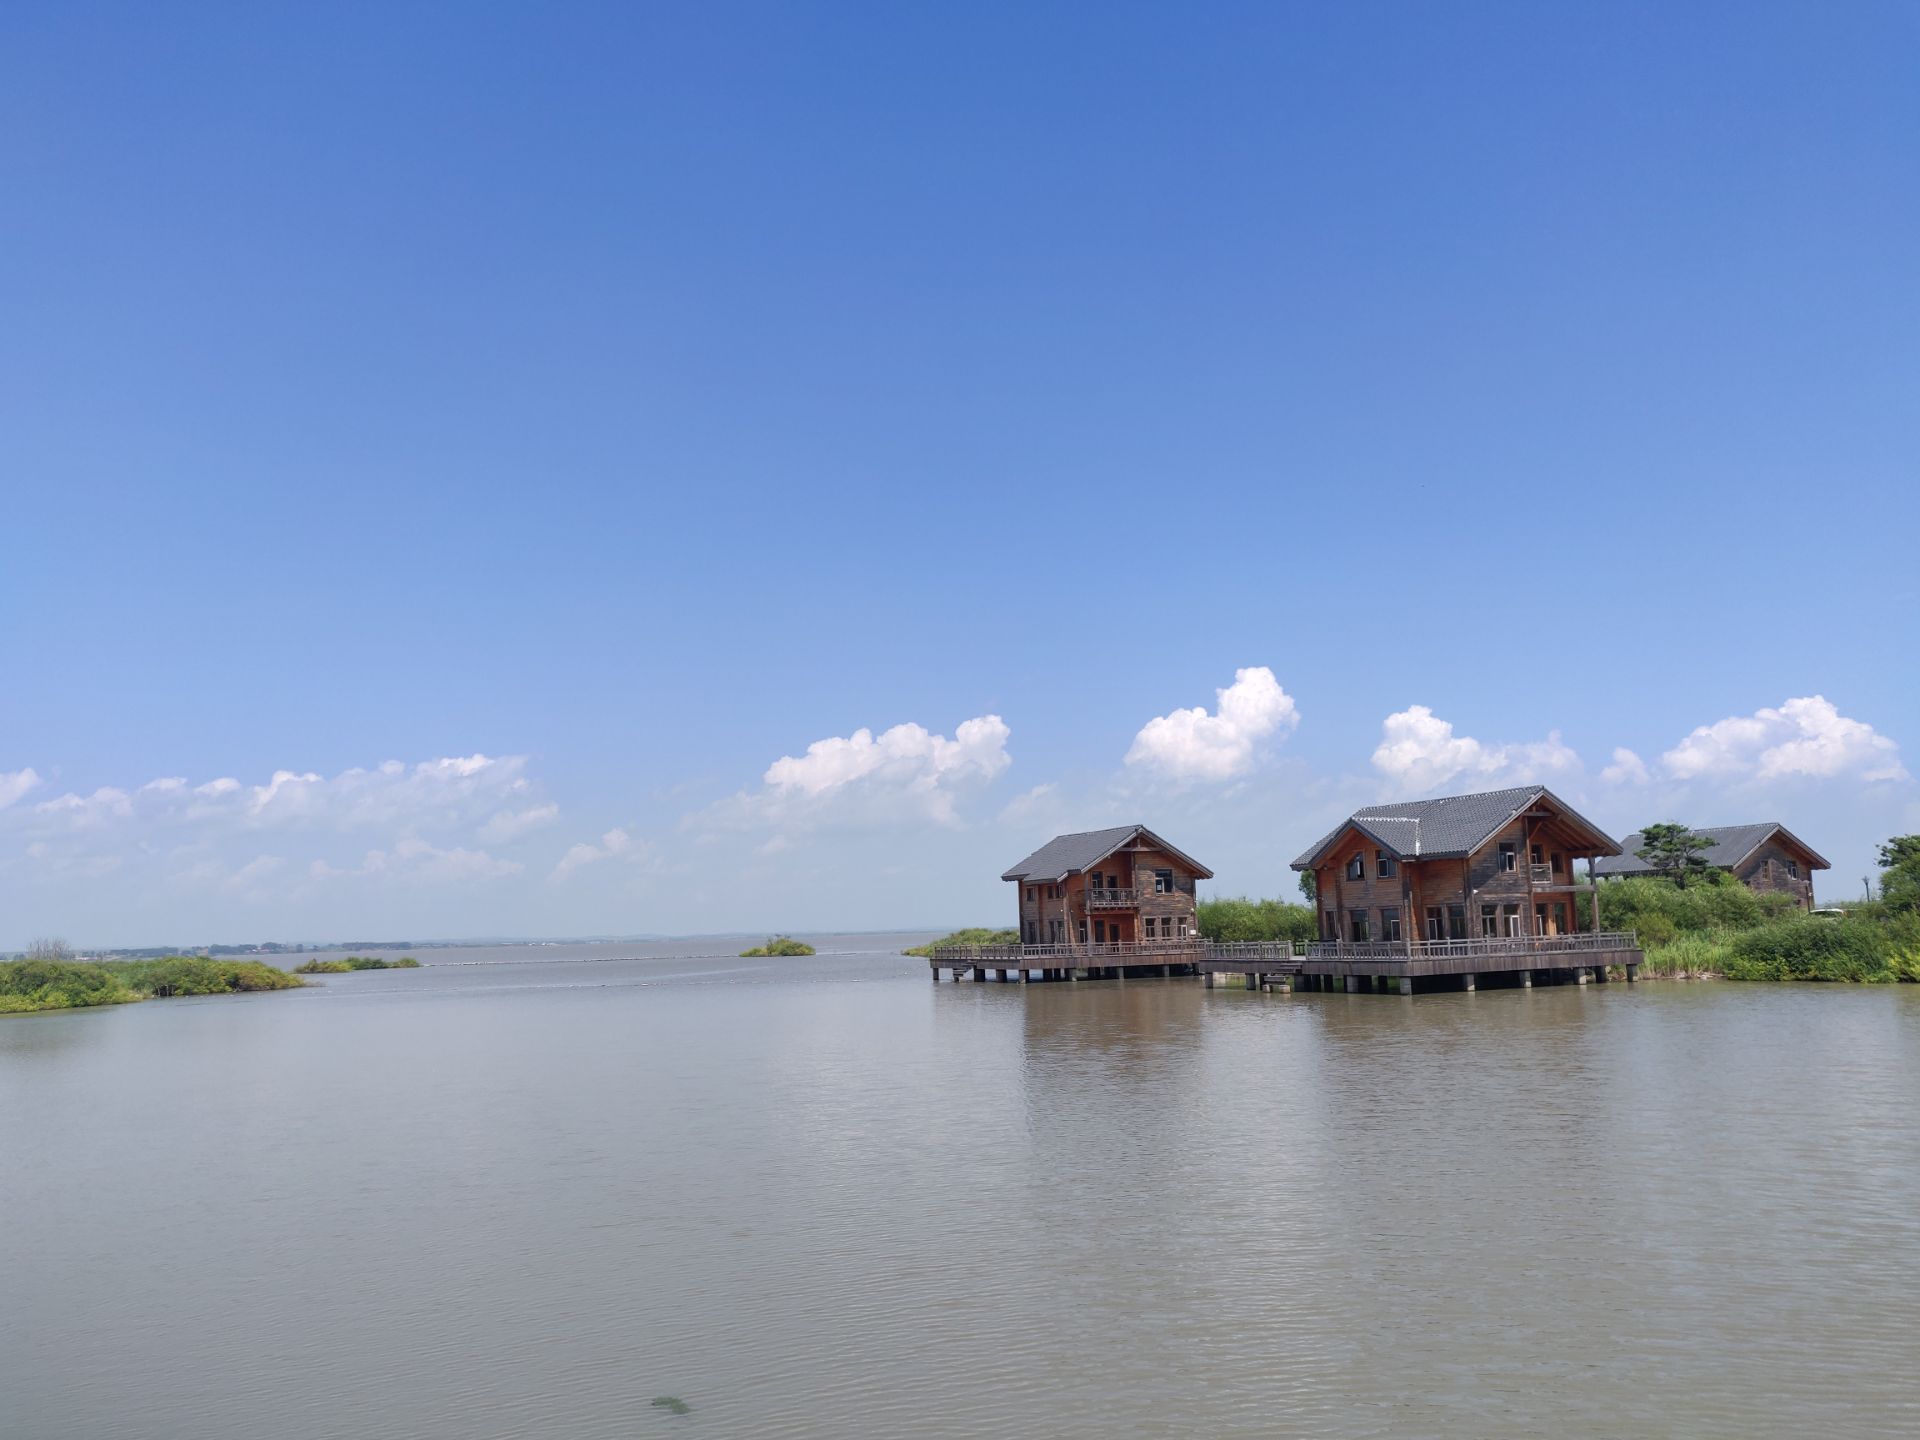 扬州天乐湖养心岛图片